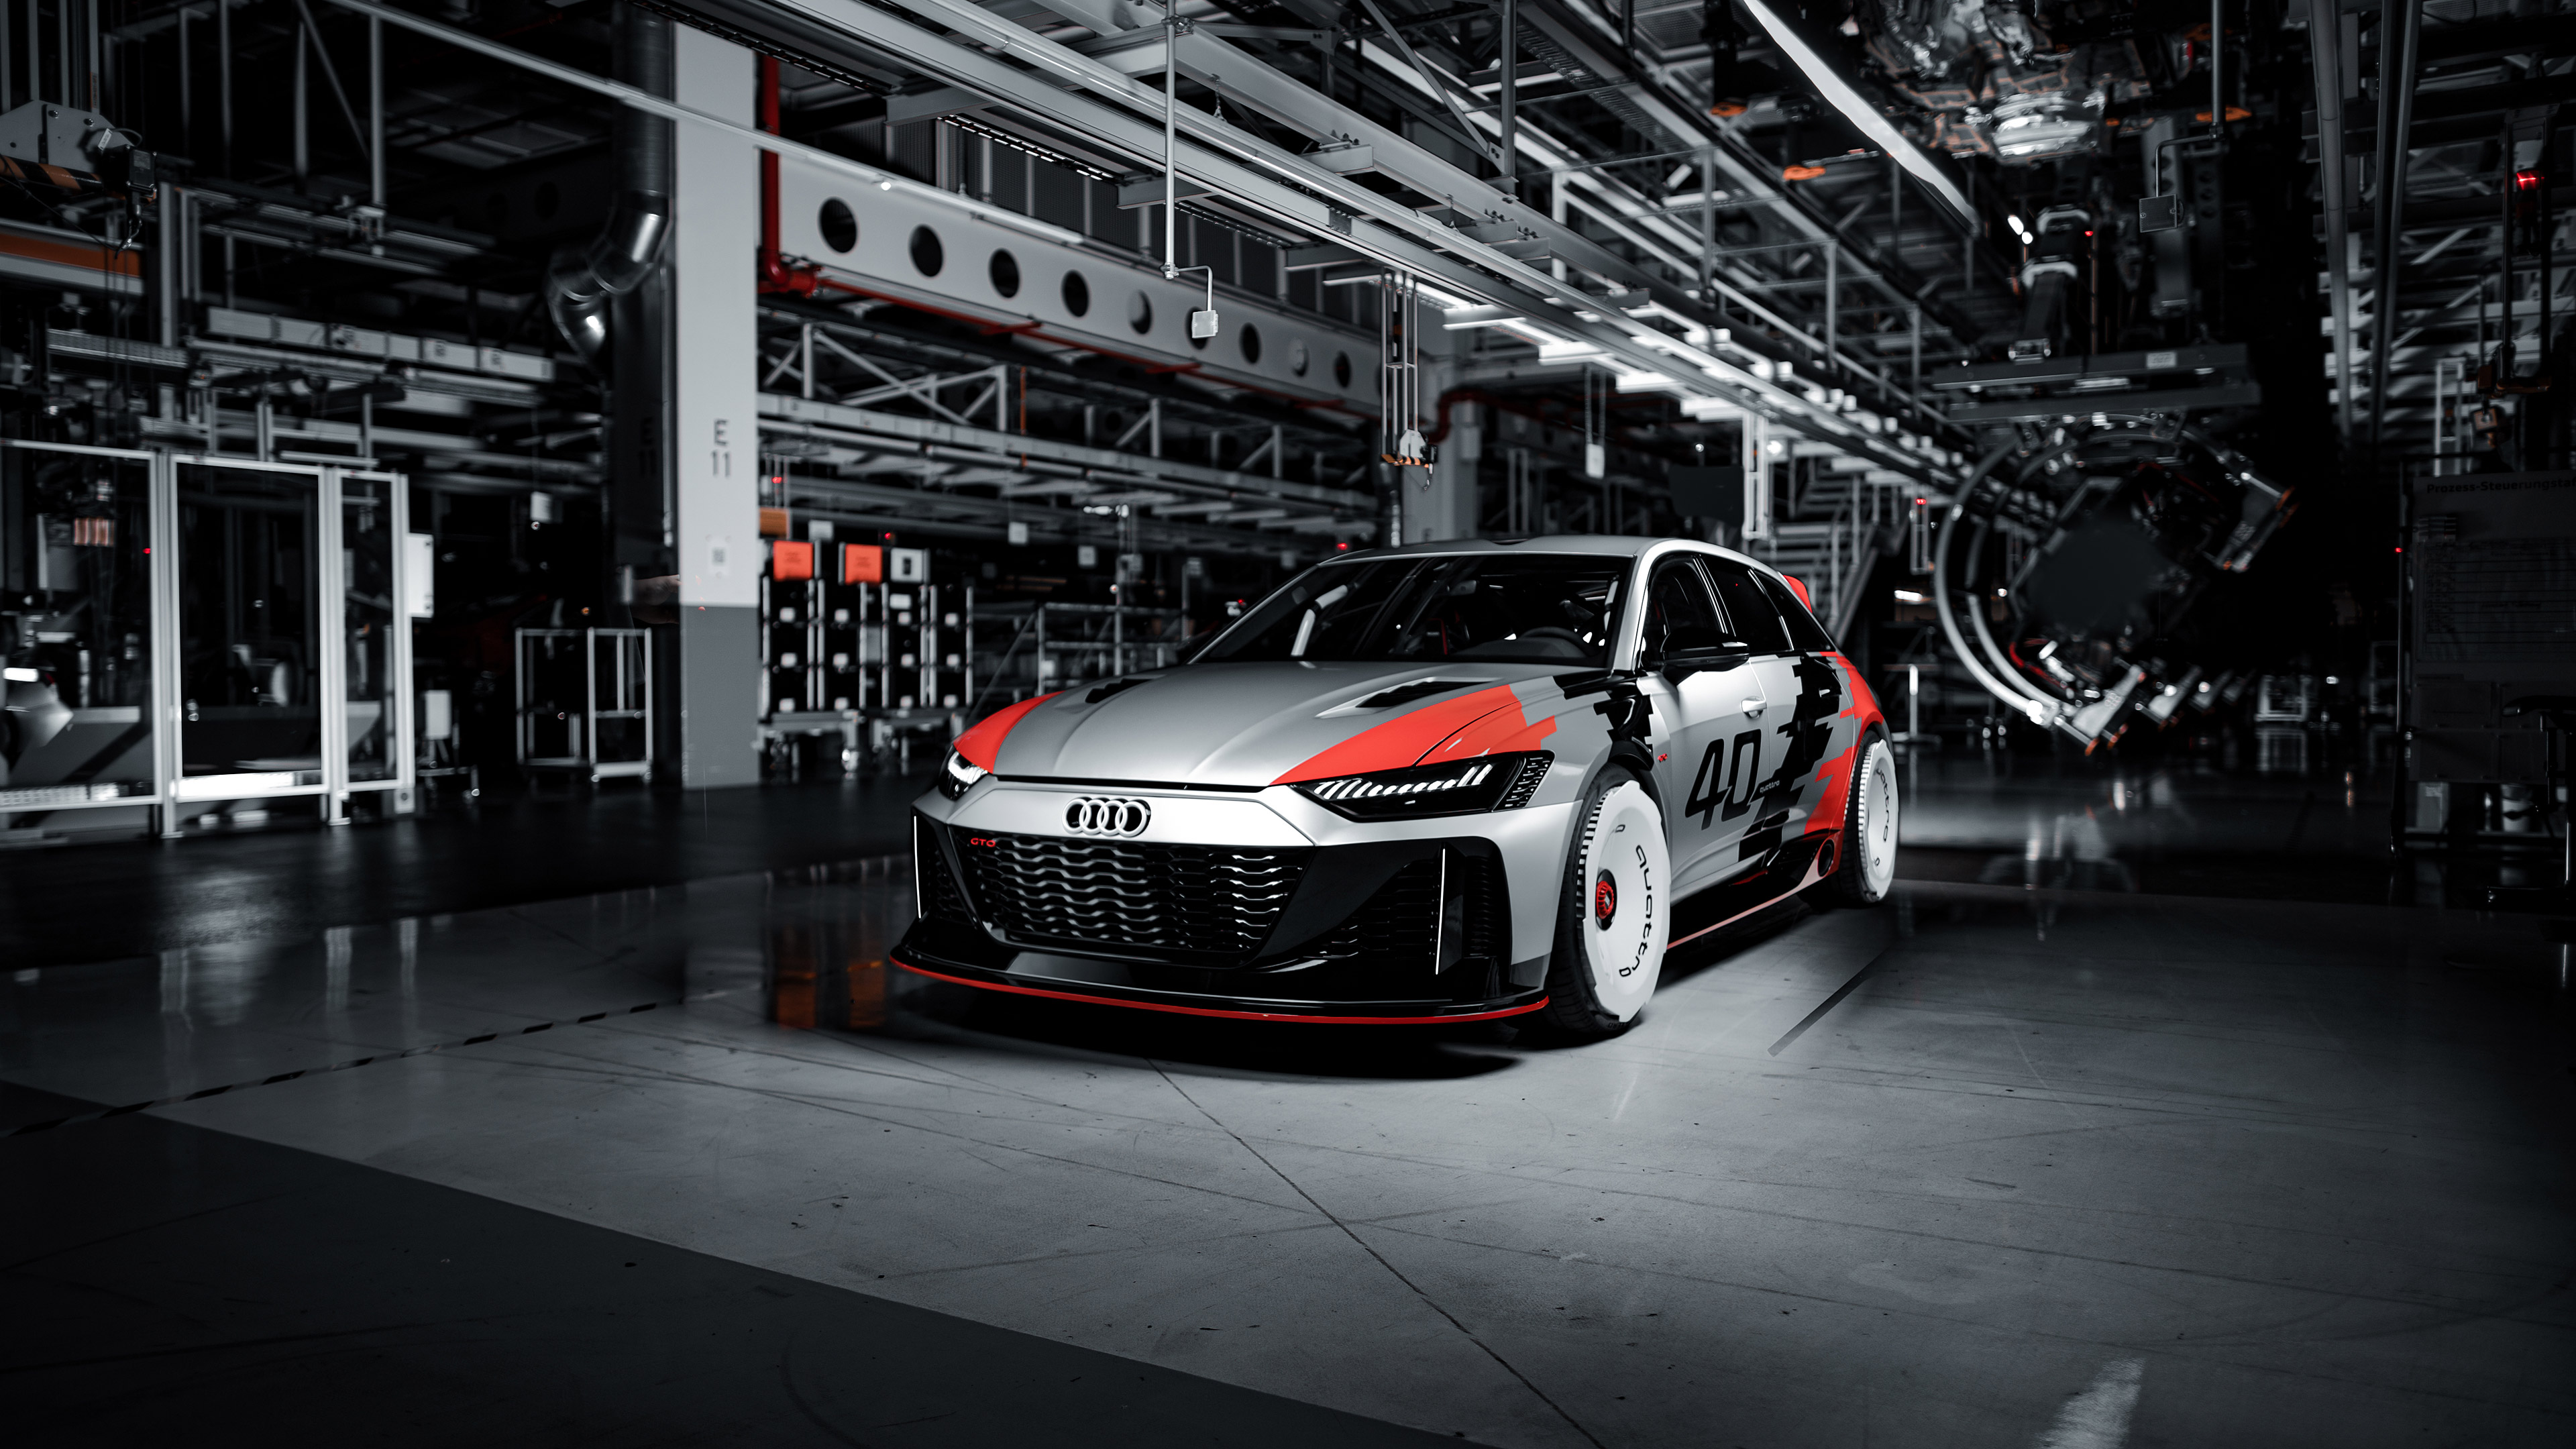 Télécharger des fonds d'écran Concept Audi Rs6 Gto HD